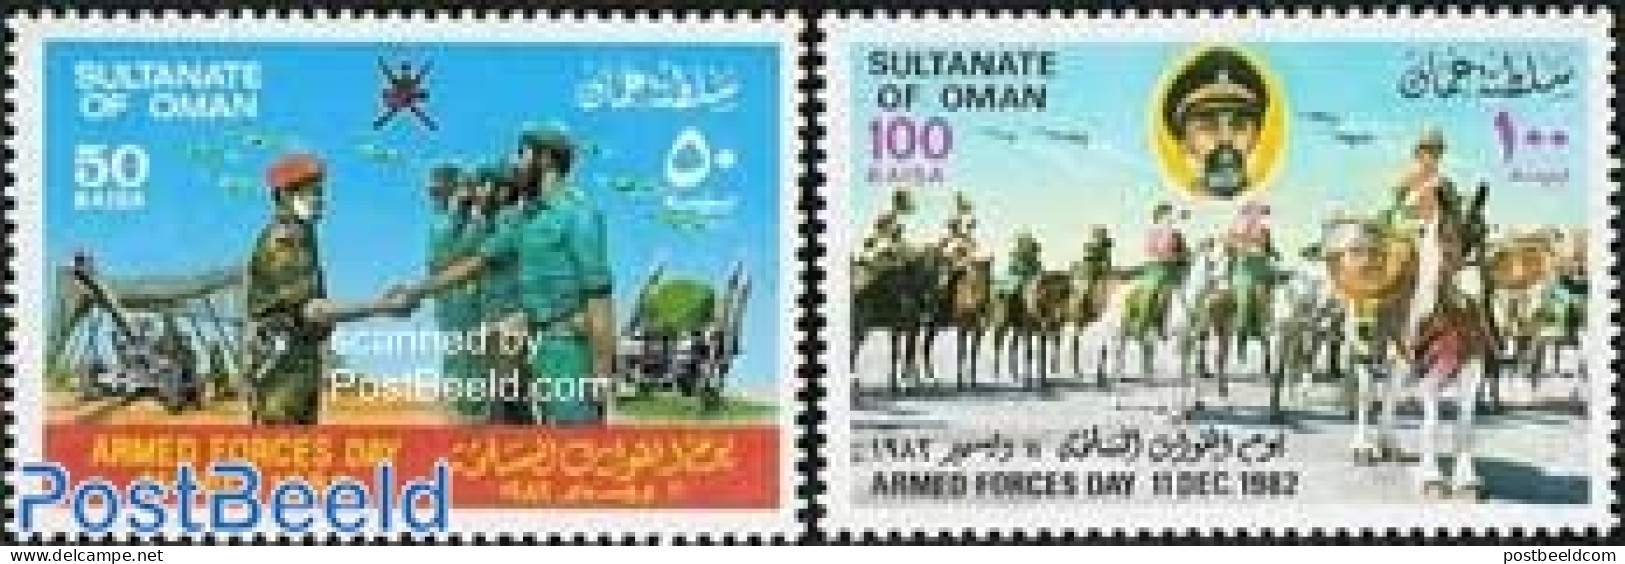 Oman 1982 Army Day 2v, Mint NH, Nature - Horses - Oman